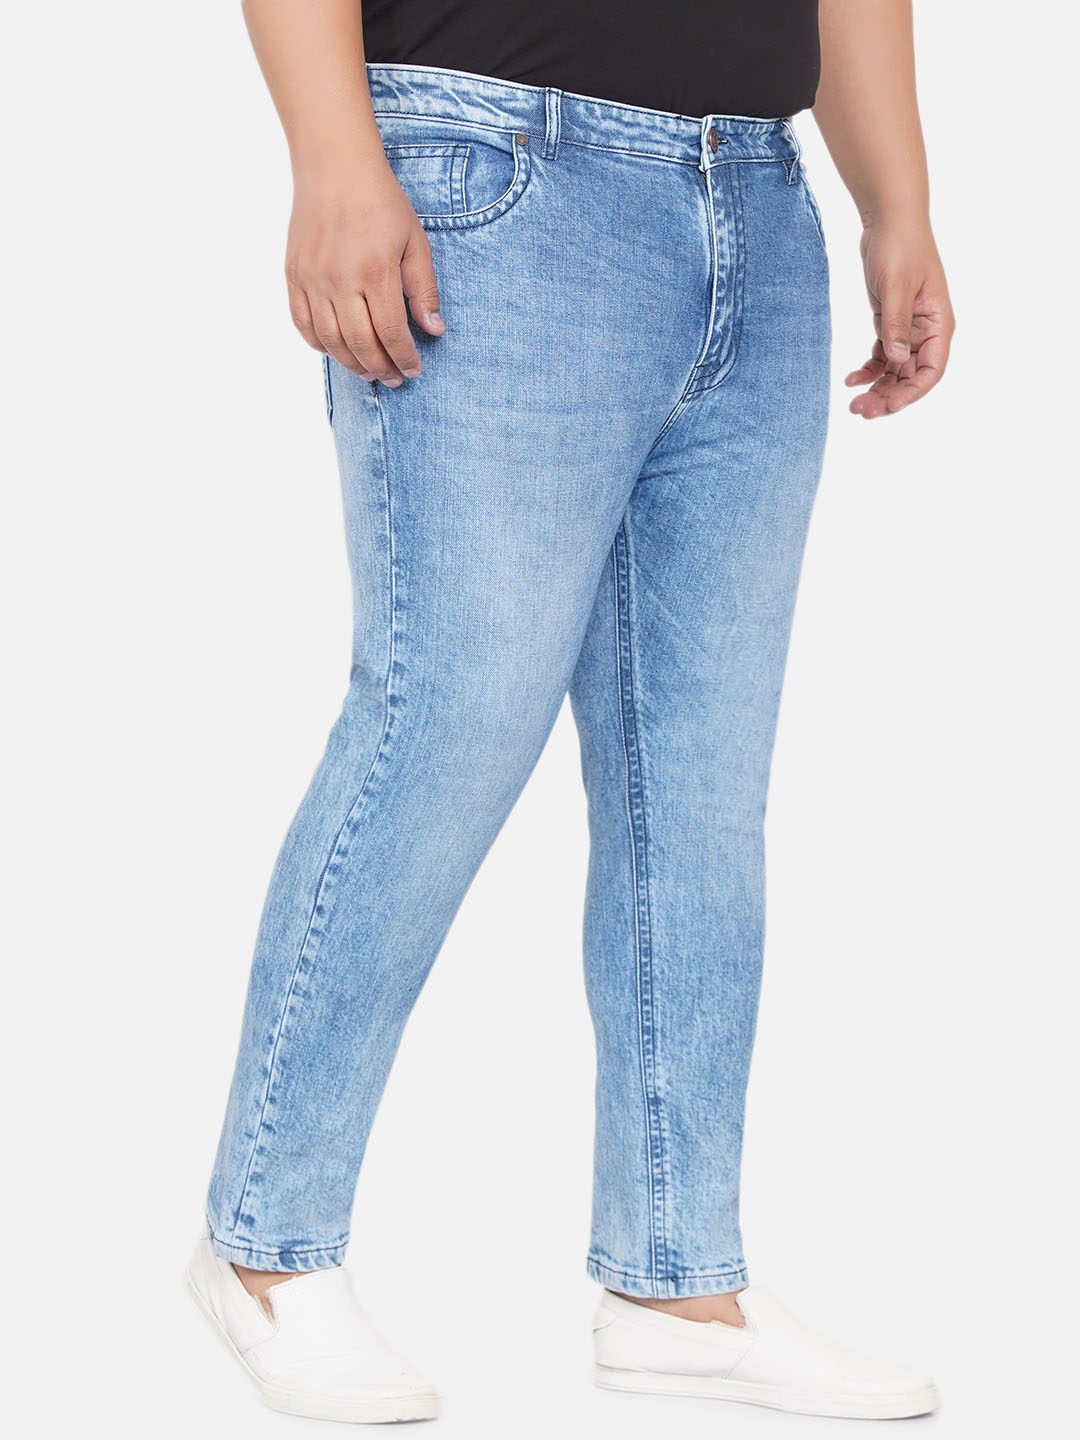 bottomwear/jeans/JPJ12251/jpj12251-3.jpg